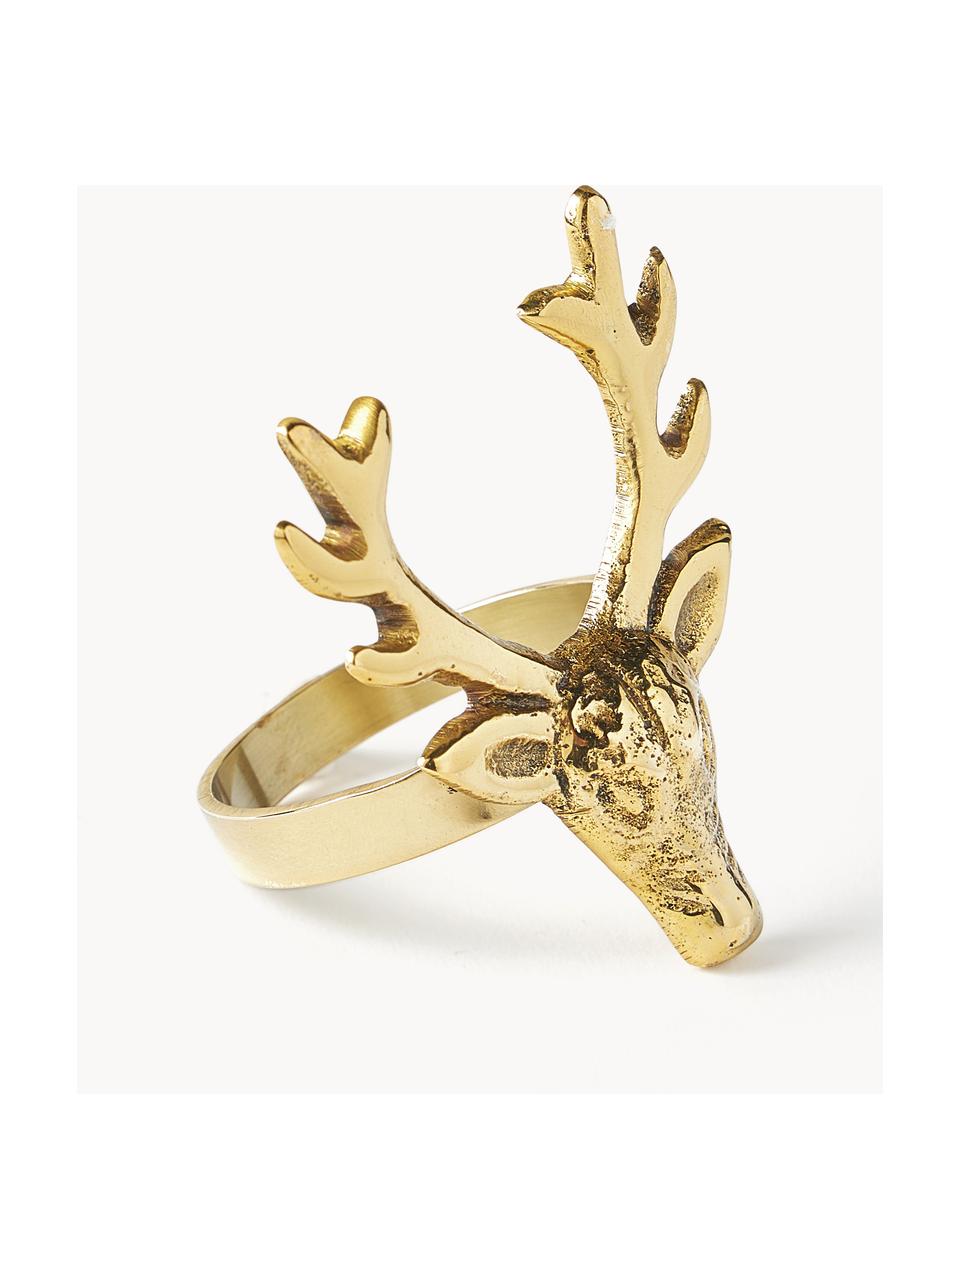 Serviettenringe Deer, 4 Stück, Metall, beschichtet, Goldfarben, B 5 x H 6 cm